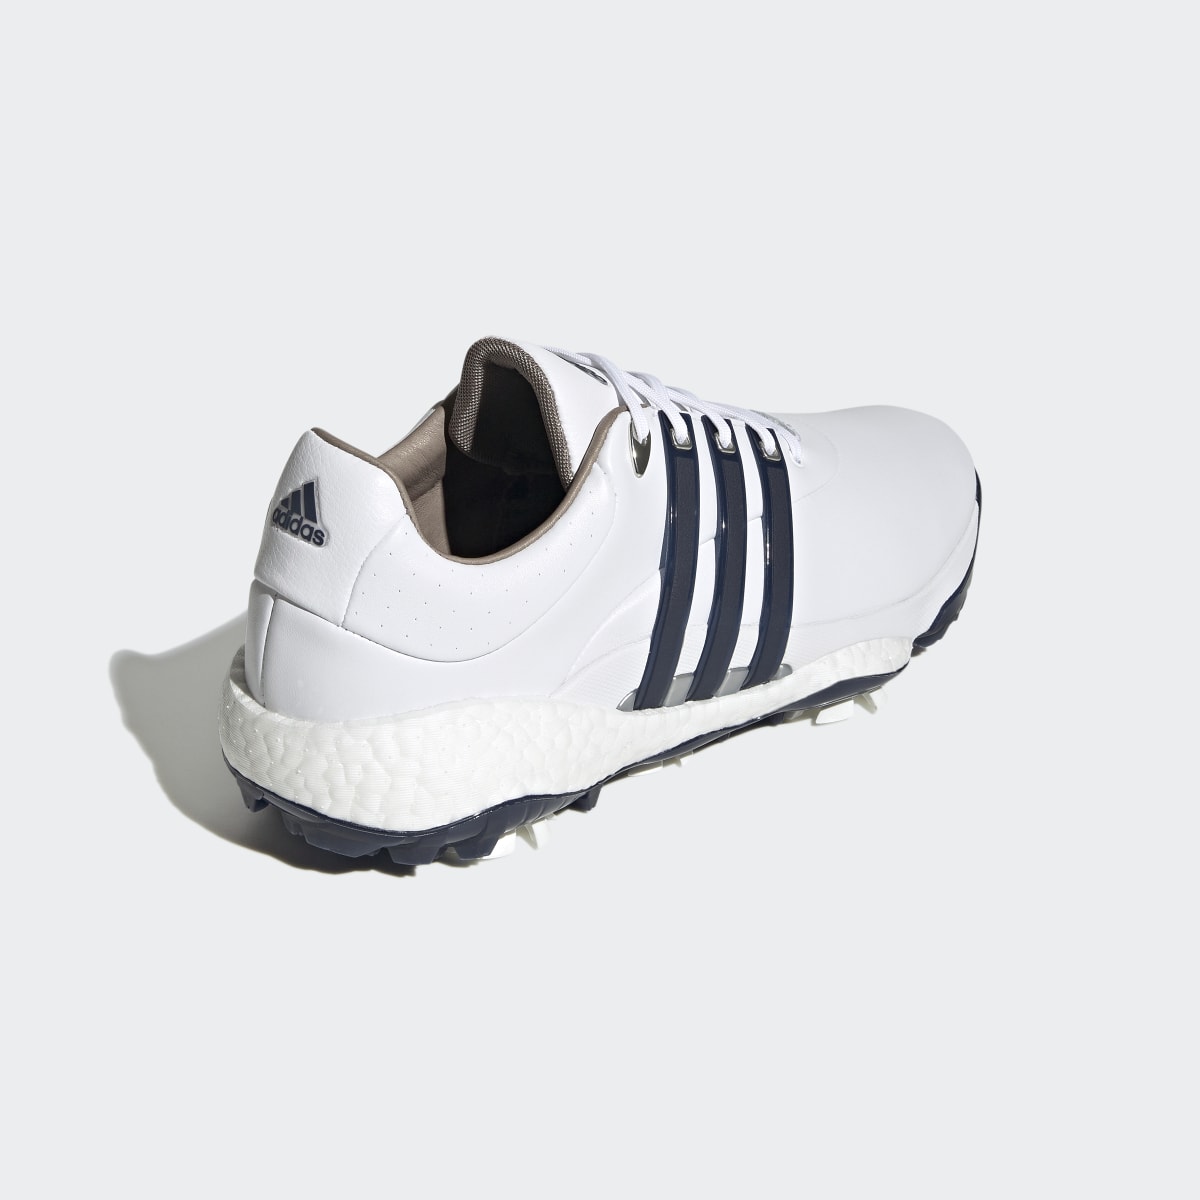 Adidas Tour360 22 Golf Shoes. 10